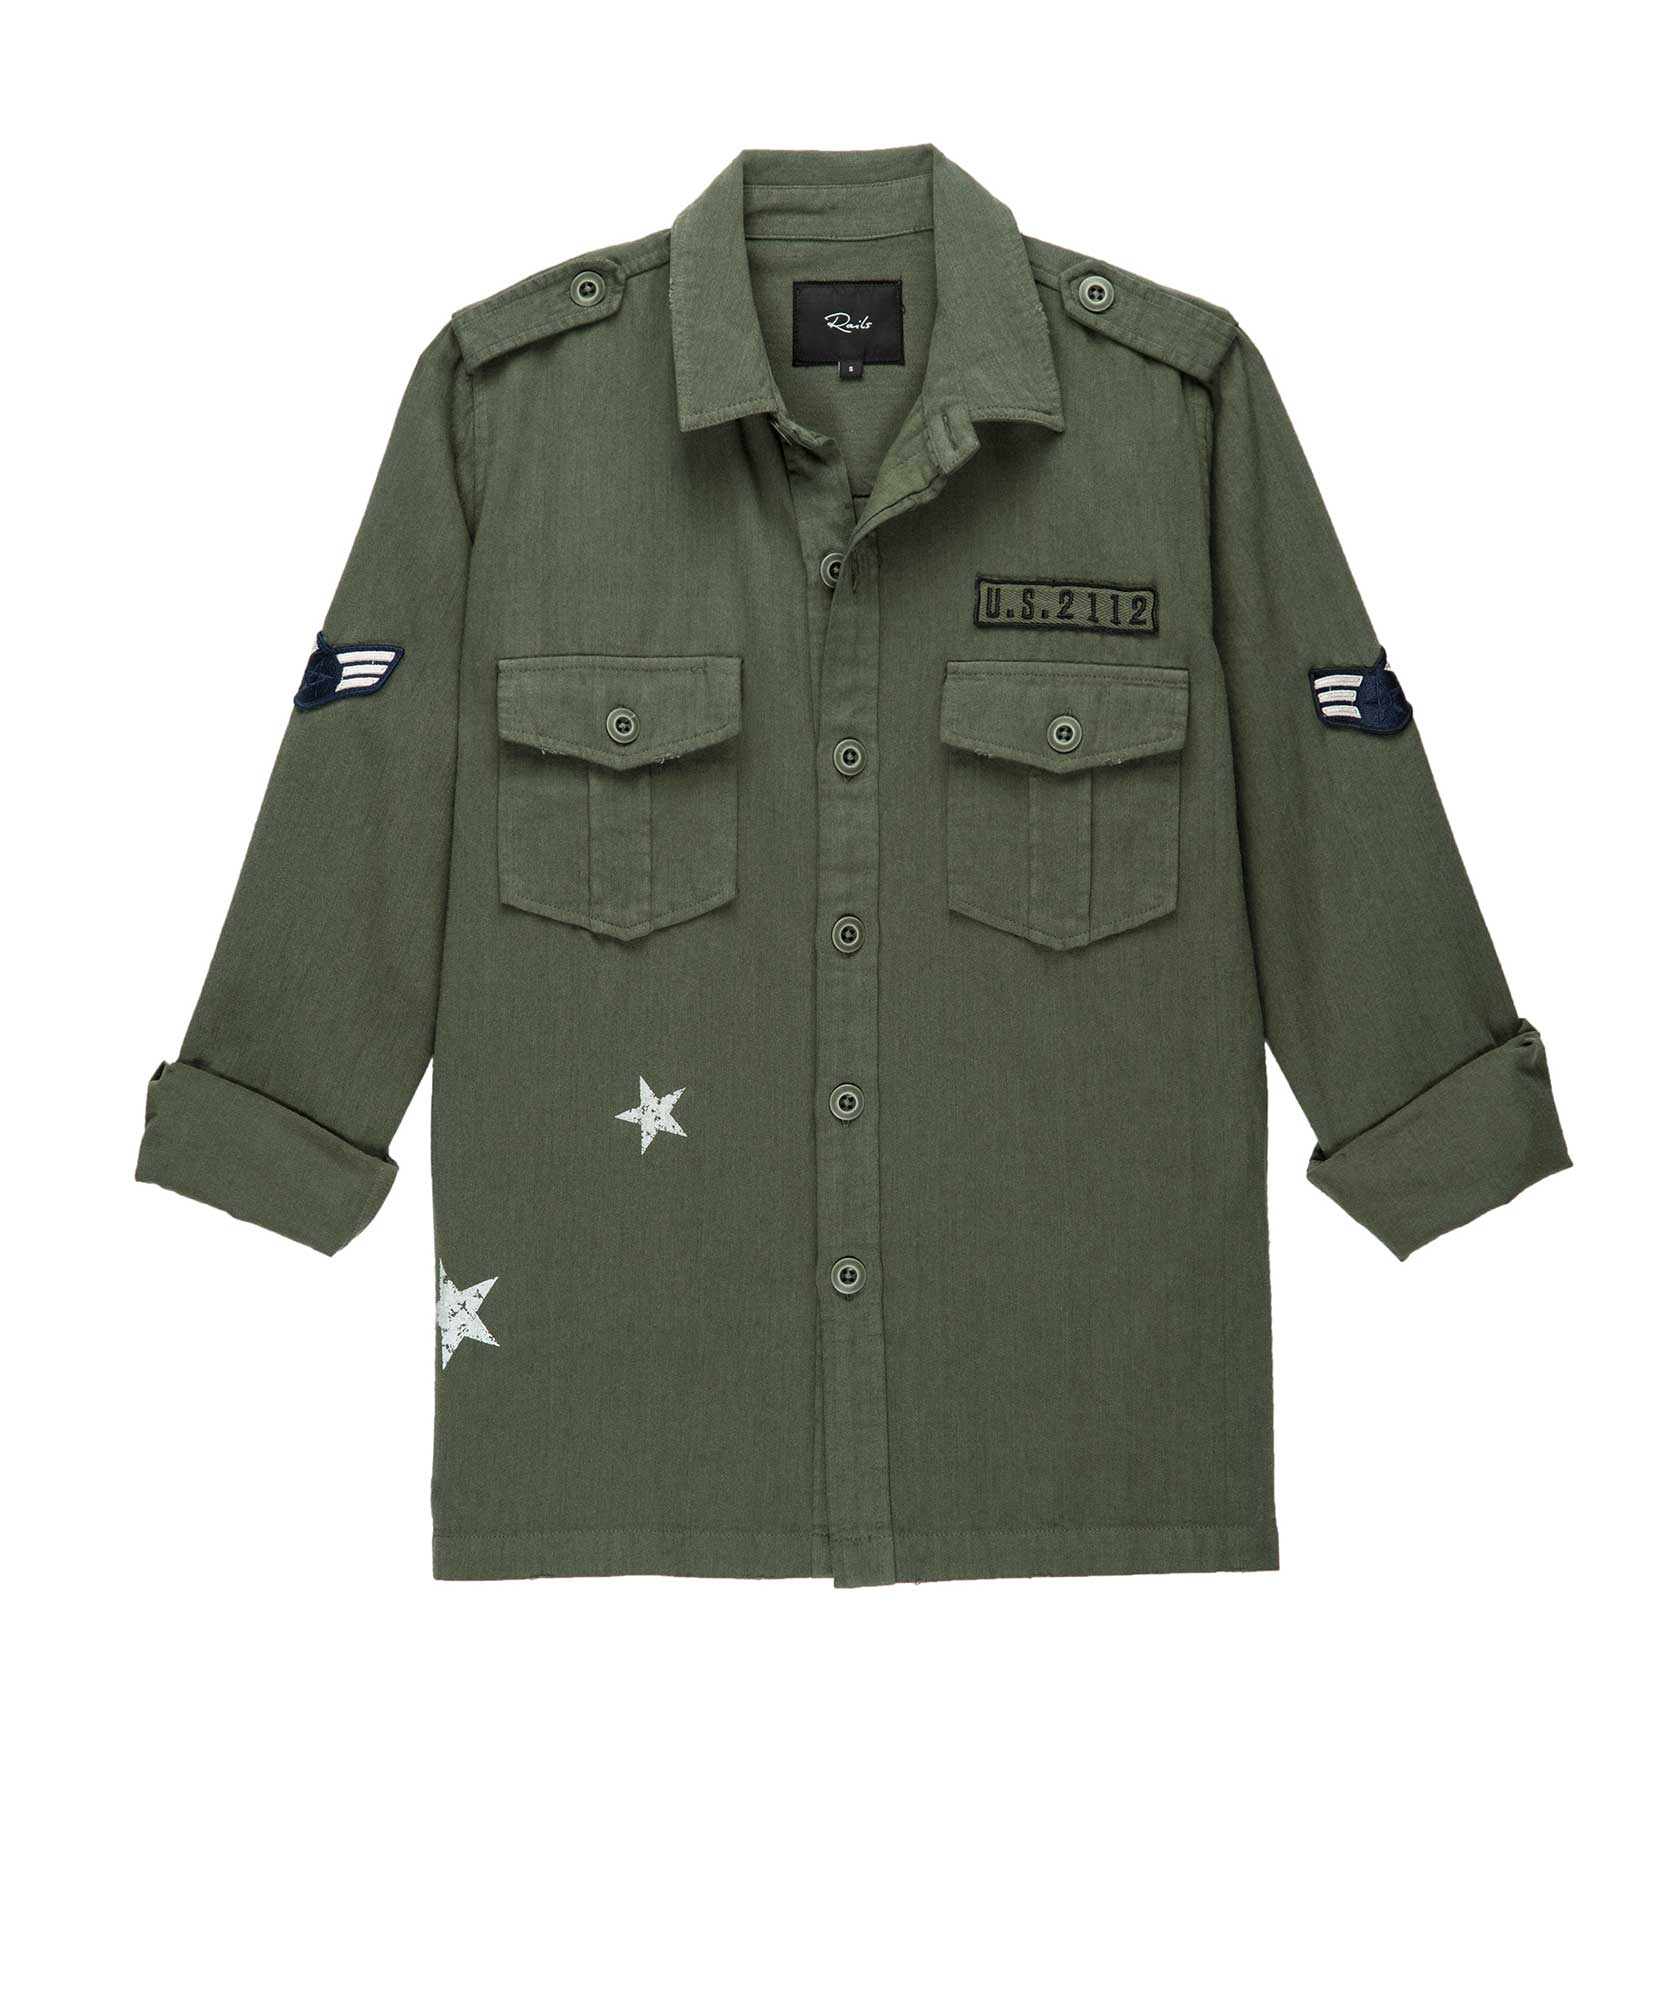 Kato Military Jacket